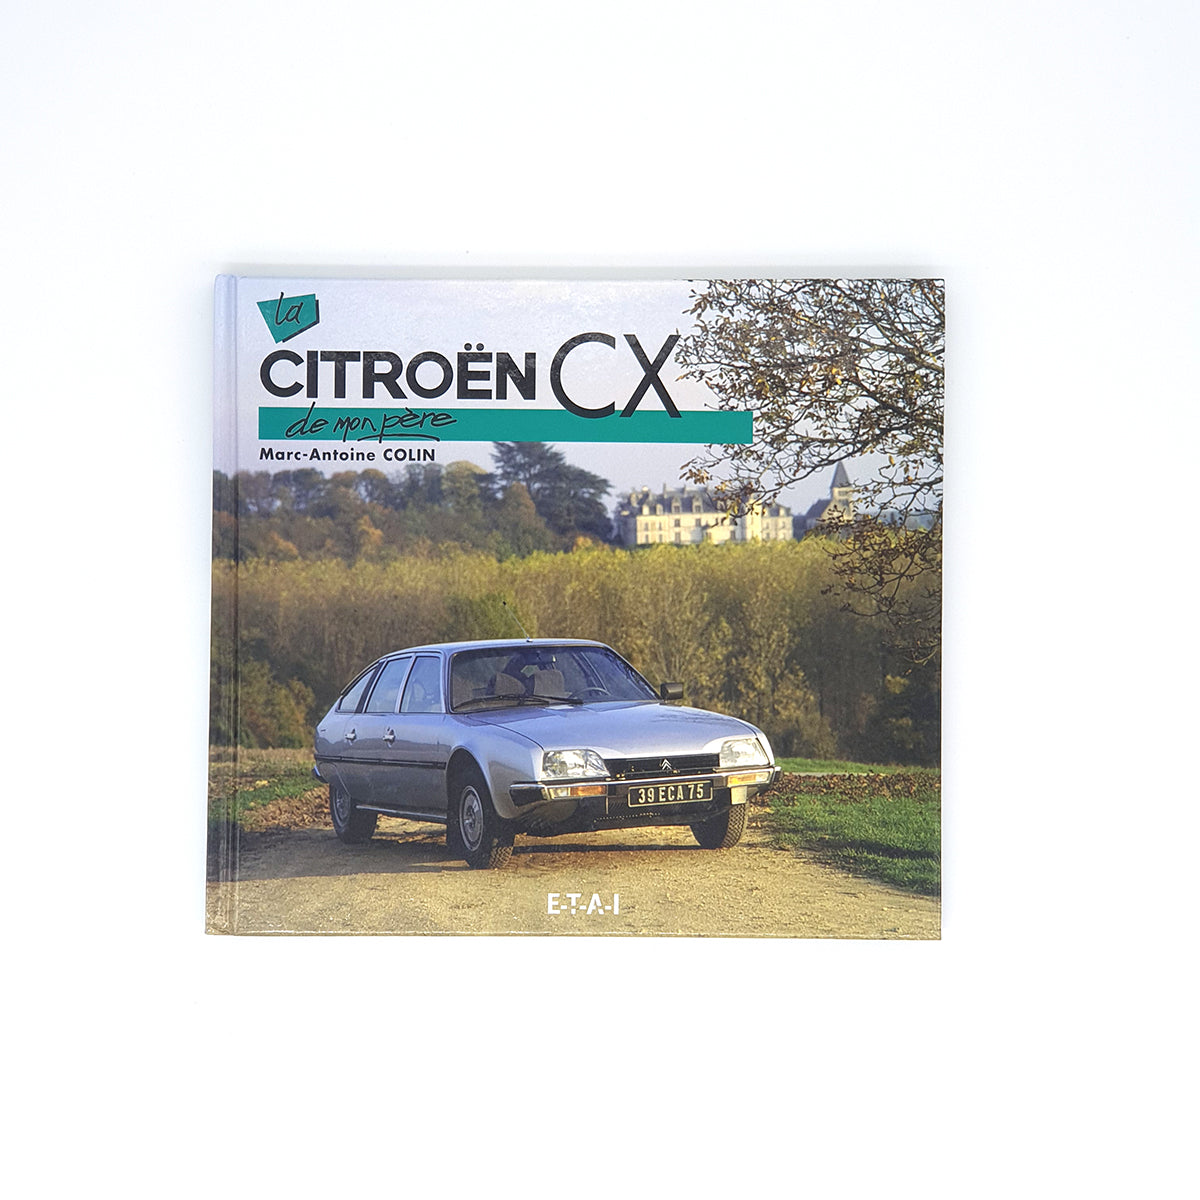 La Citroën CX de mon père (edition 2008)